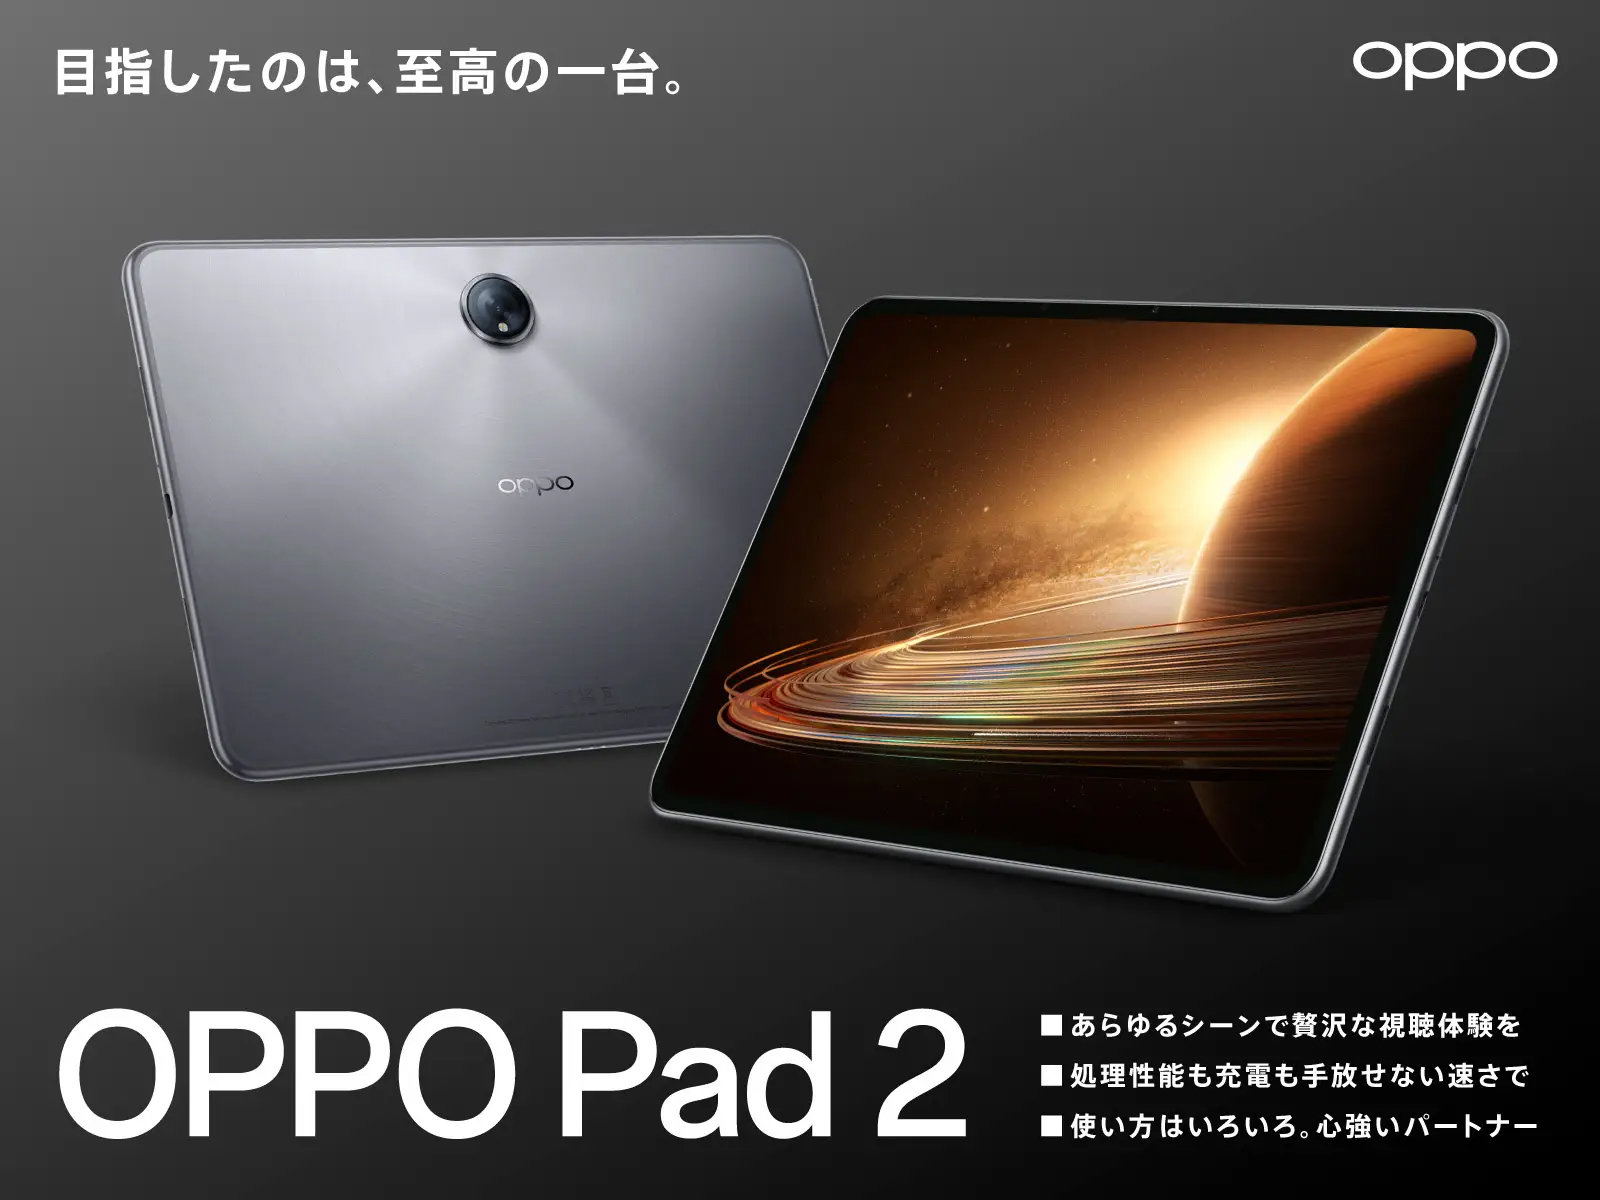 約11.6型のハイエンドタブレット「OPPO Pad 2」10月20日に正式販売 約9 